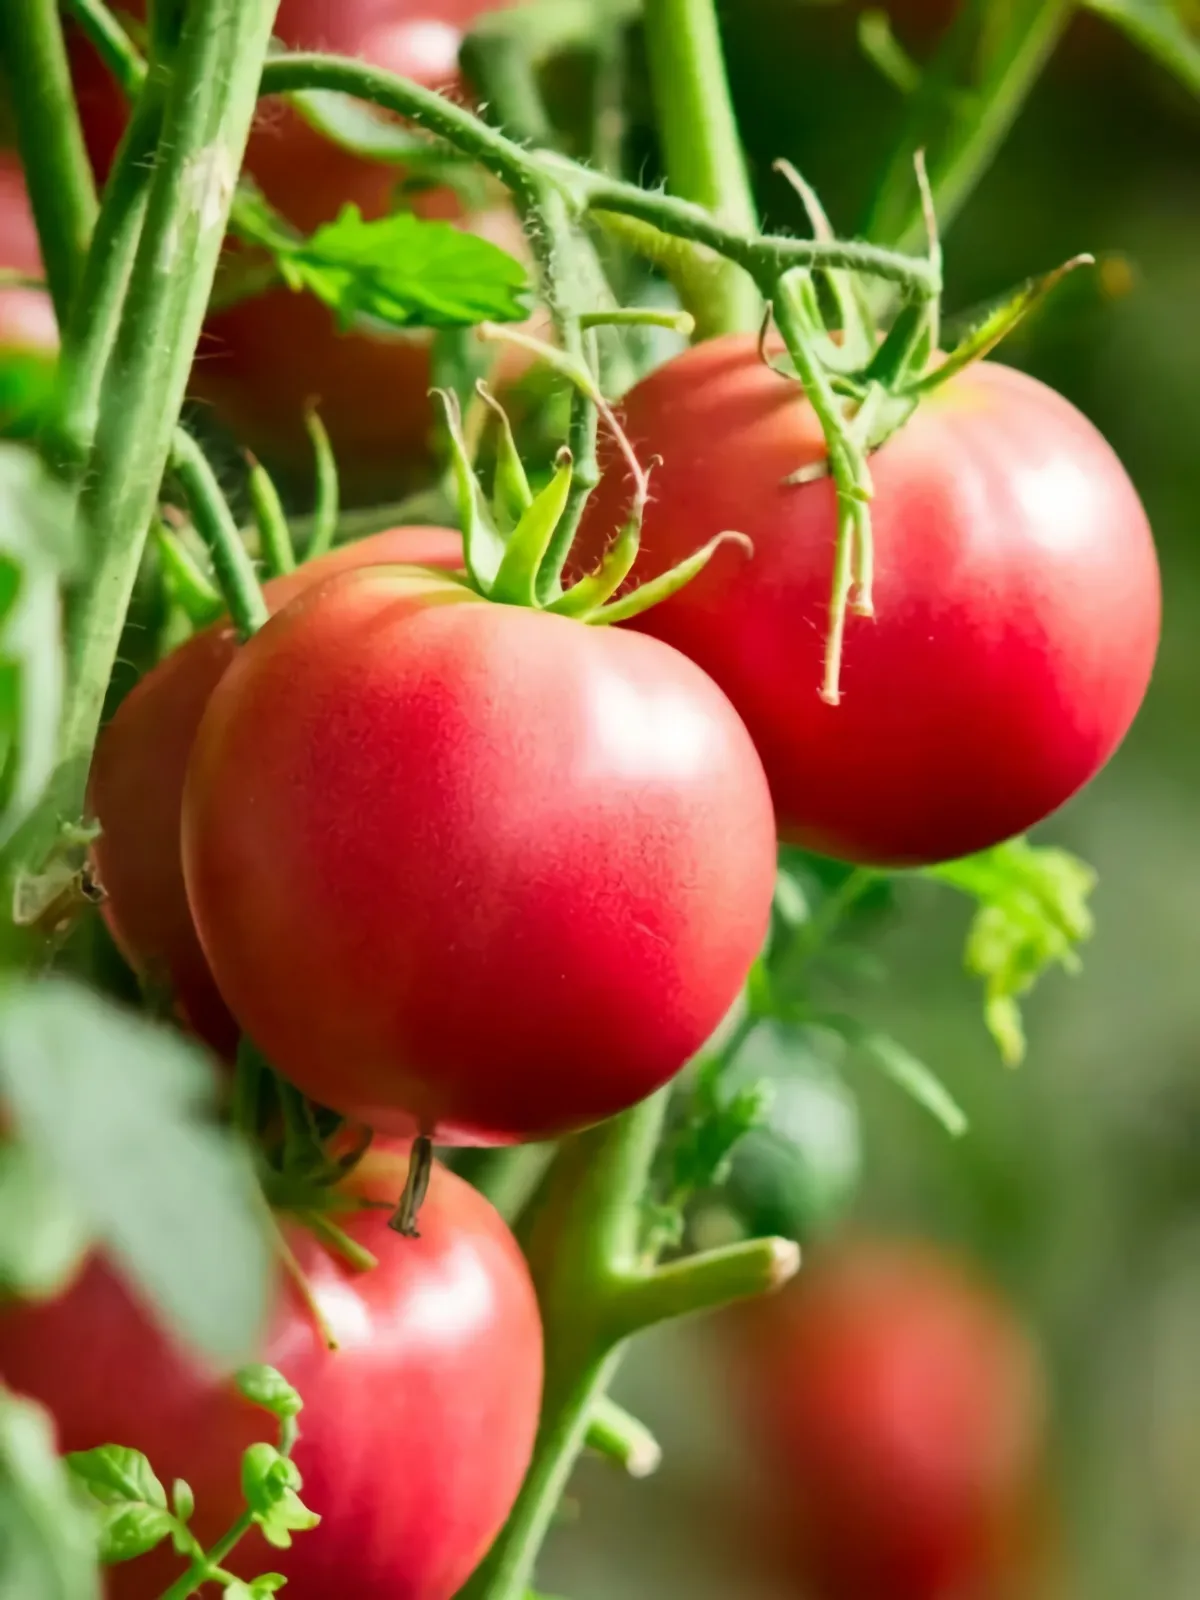 welche lebensmittel im winter meiden im winter tomaten aus glas oder dose konsumieren